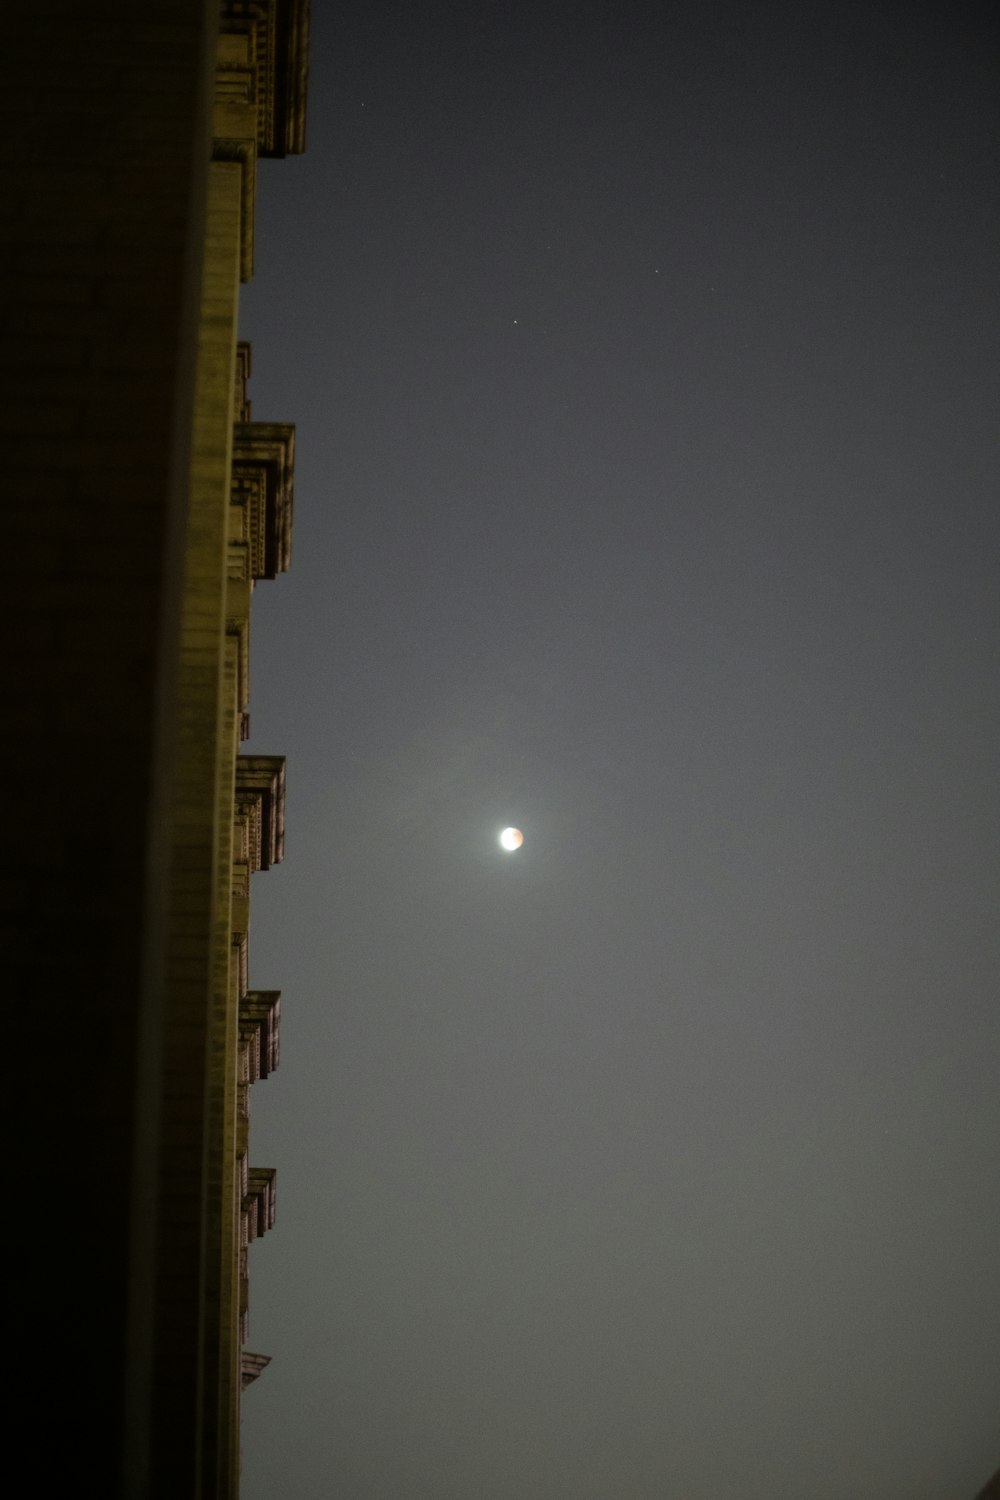 Un bâtiment avec une lune dans le ciel